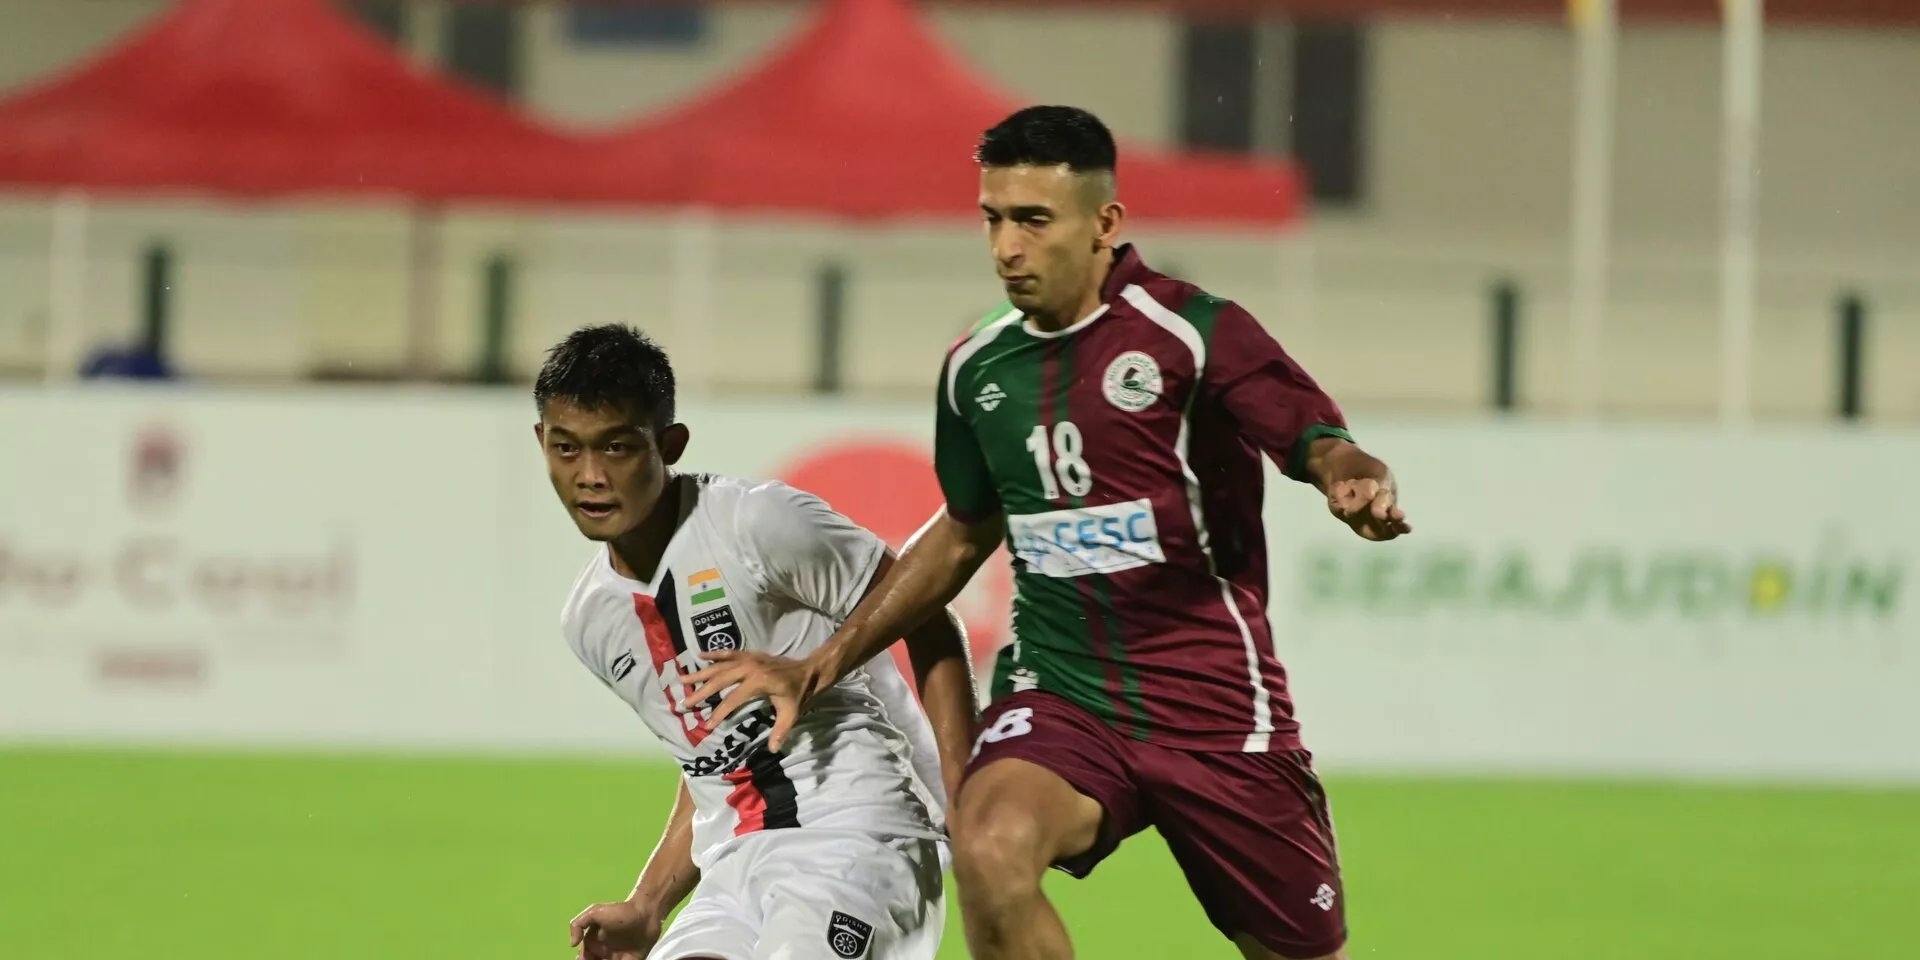 AFC Cup: Mohun Bagan thump Odisha FC at home